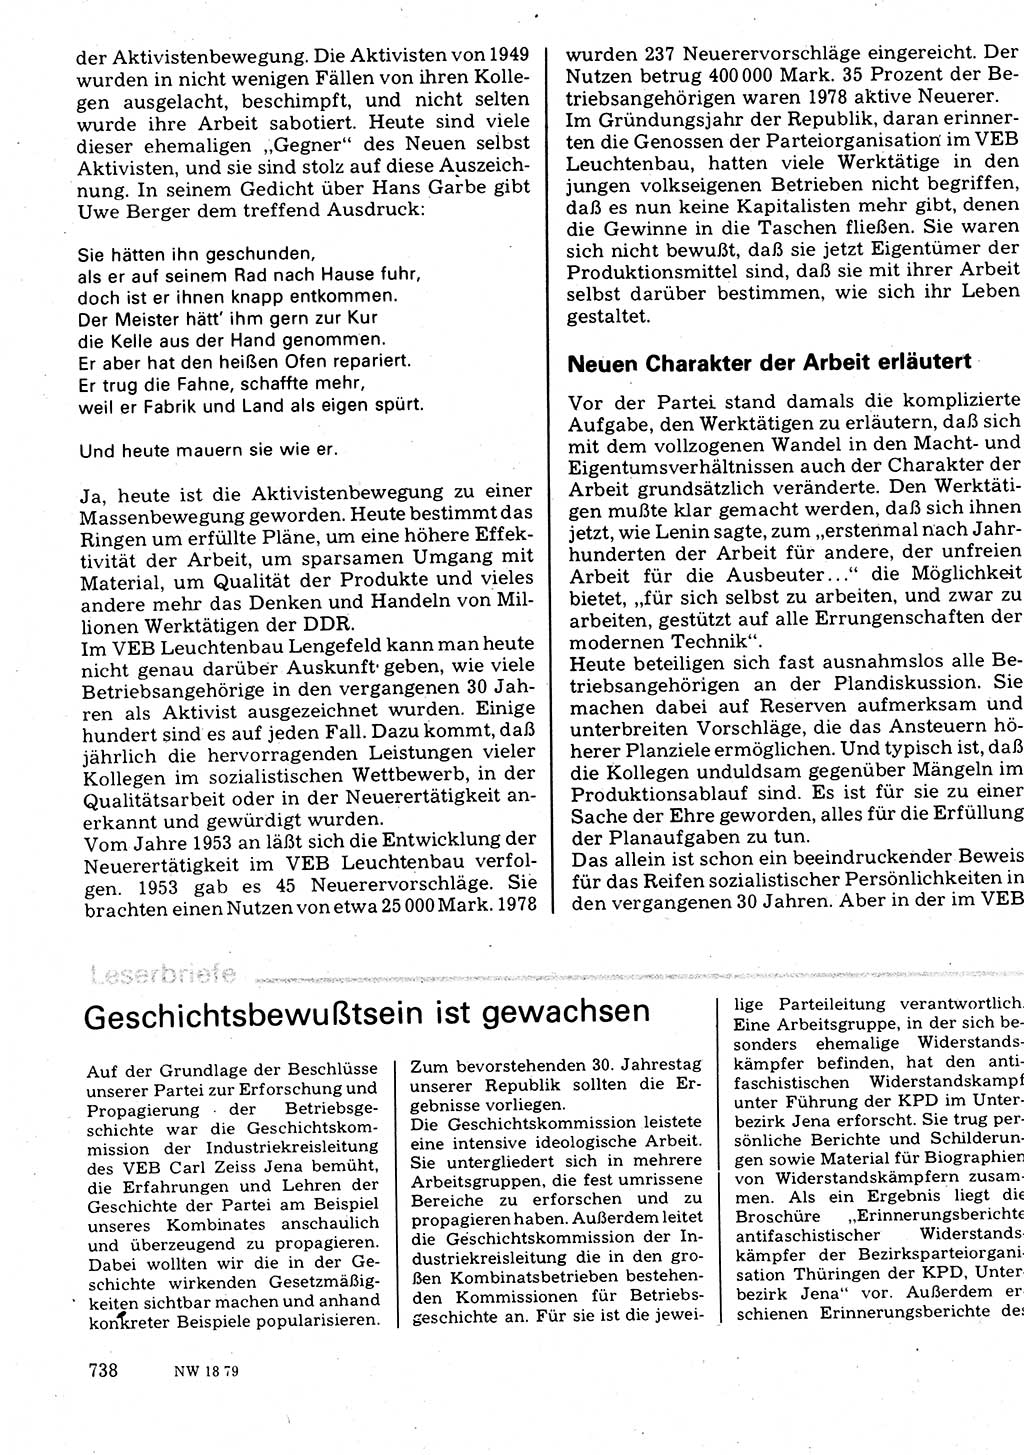 Neuer Weg (NW), Organ des Zentralkomitees (ZK) der SED (Sozialistische Einheitspartei Deutschlands) für Fragen des Parteilebens, 34. Jahrgang [Deutsche Demokratische Republik (DDR)] 1979, Seite 738 (NW ZK SED DDR 1979, S. 738)